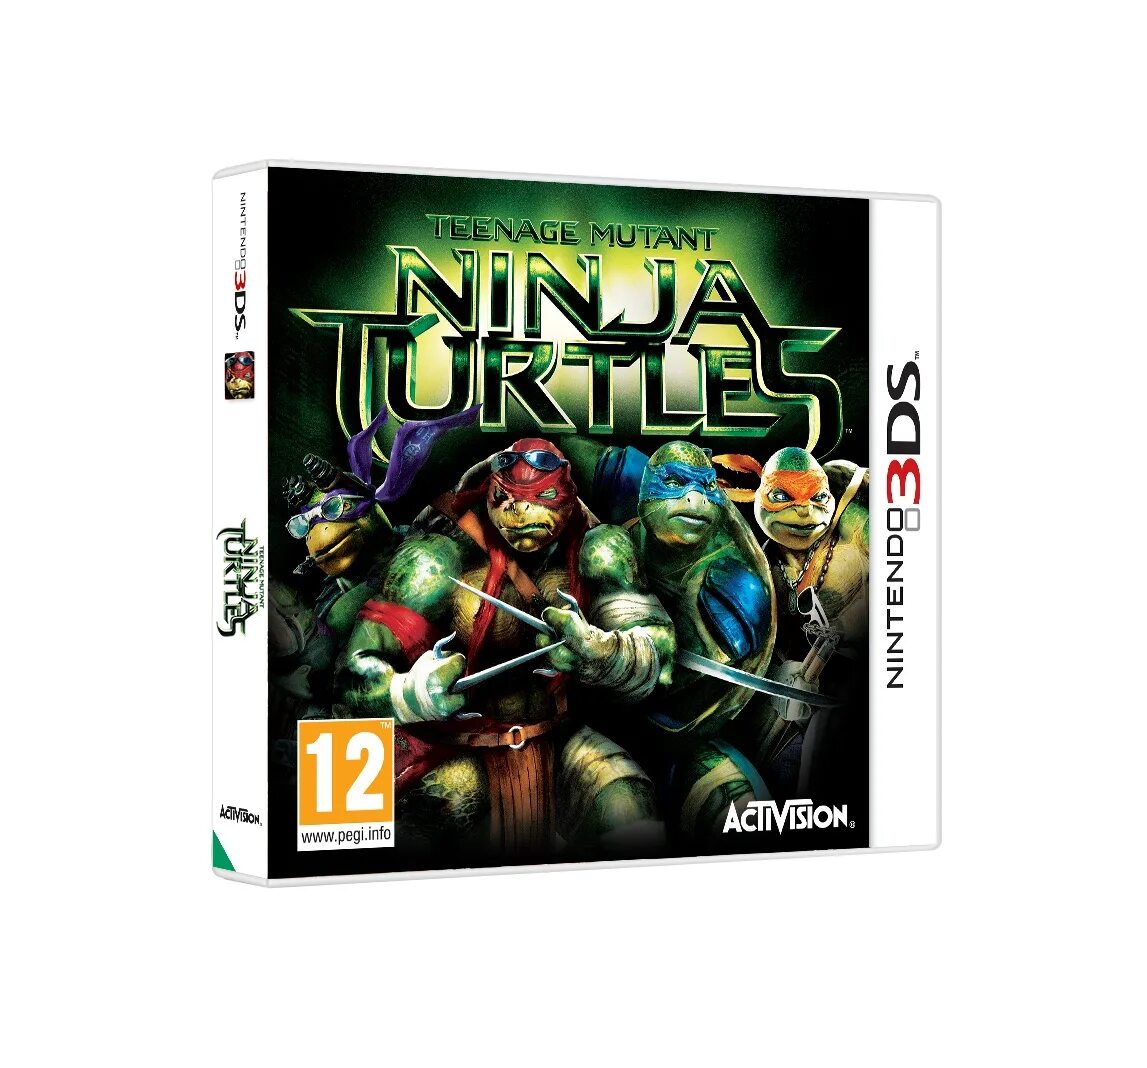 TMNT - teenage Mutant Ninja Turtles 3 игра. Teenage Mutant Ninja Turtles 3ds. Teenage Mutant Ninja Turtles игра 2013 Xbox 360. Teenage Mutant Ninja Turtles игра 2013 Nintendo 3ds.